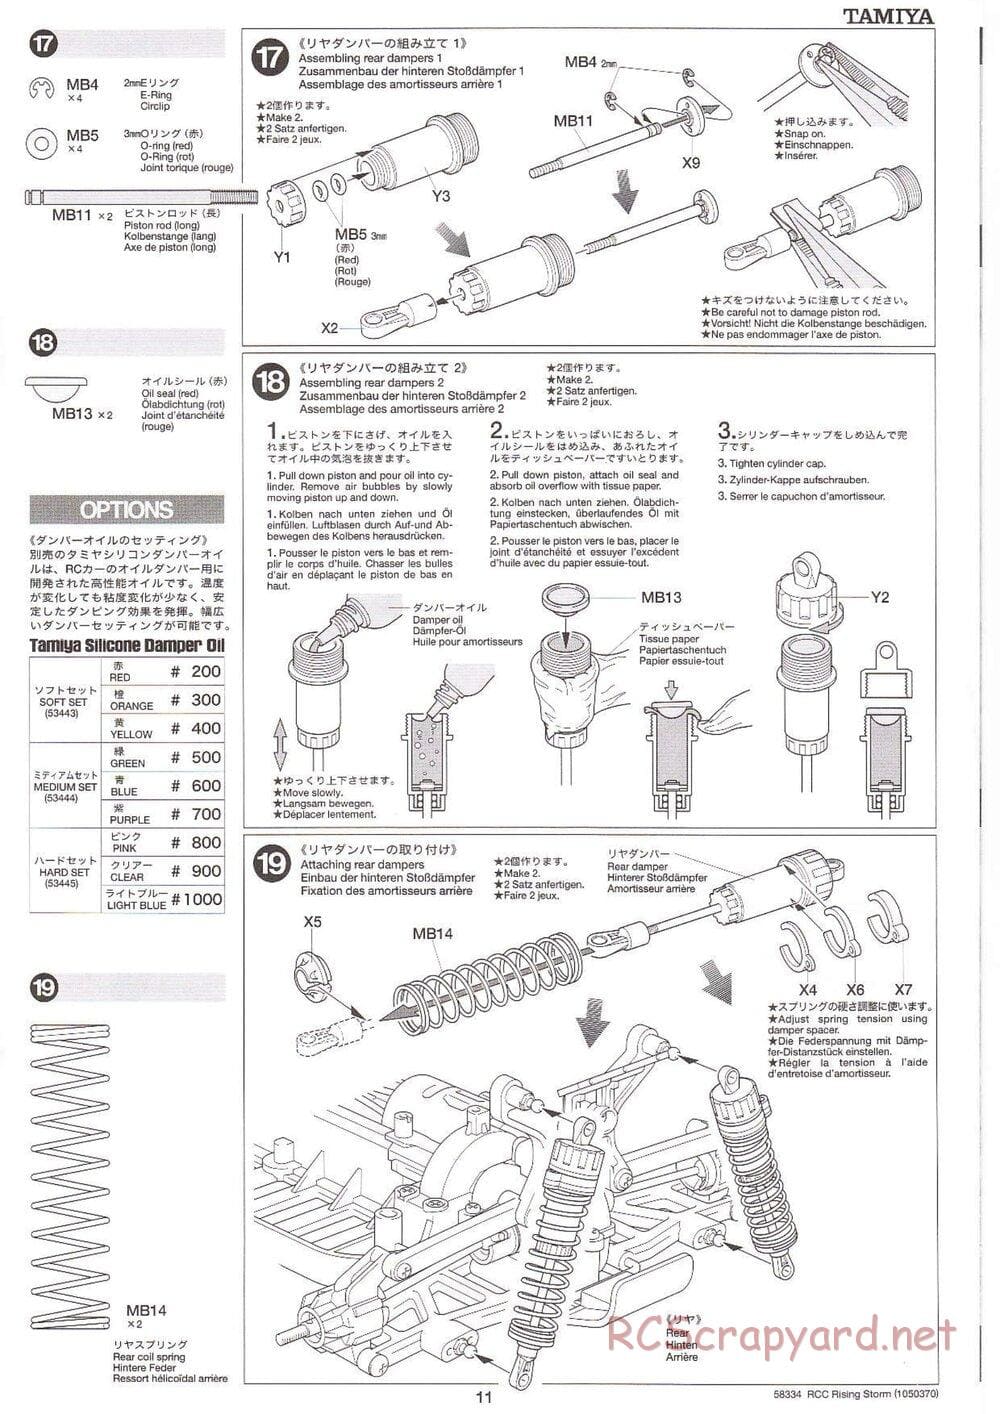 Tamiya - Rising Storm Chassis - Manual - Page 11